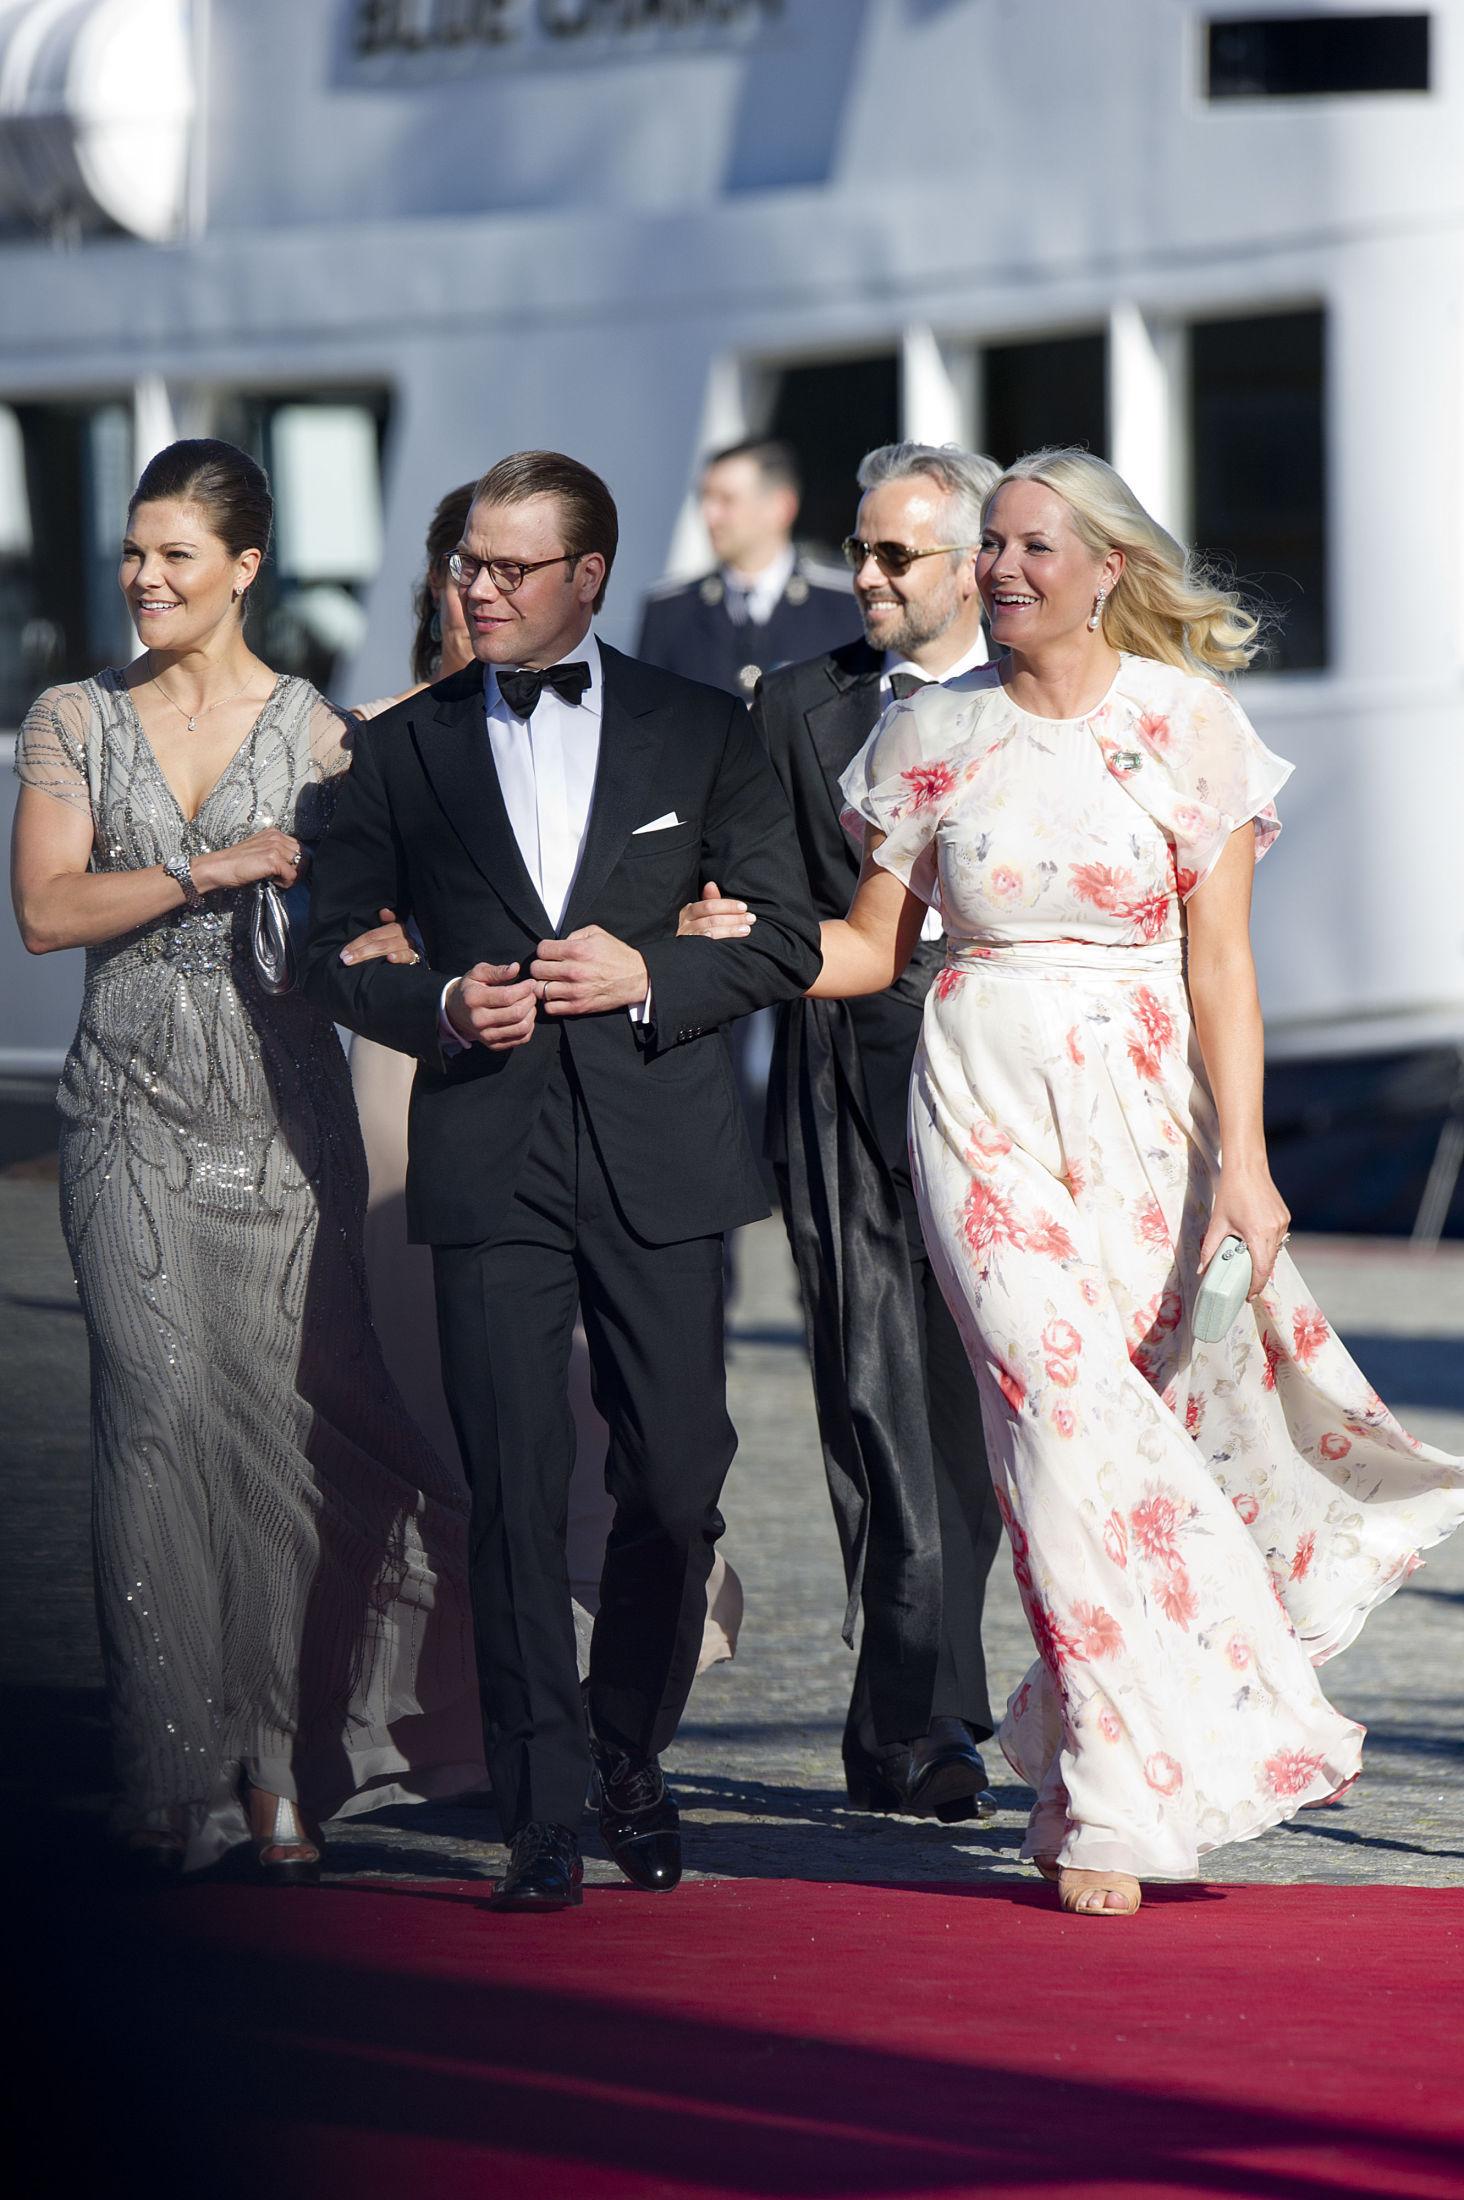 FÅR SKRYT: Det var tydelig at de svenske kongeekspertene var beigstret for kjolevalget til både Mette-Marit, Victoria og Märta. Foto: Jon Olav Nesvold / NTB scanpix